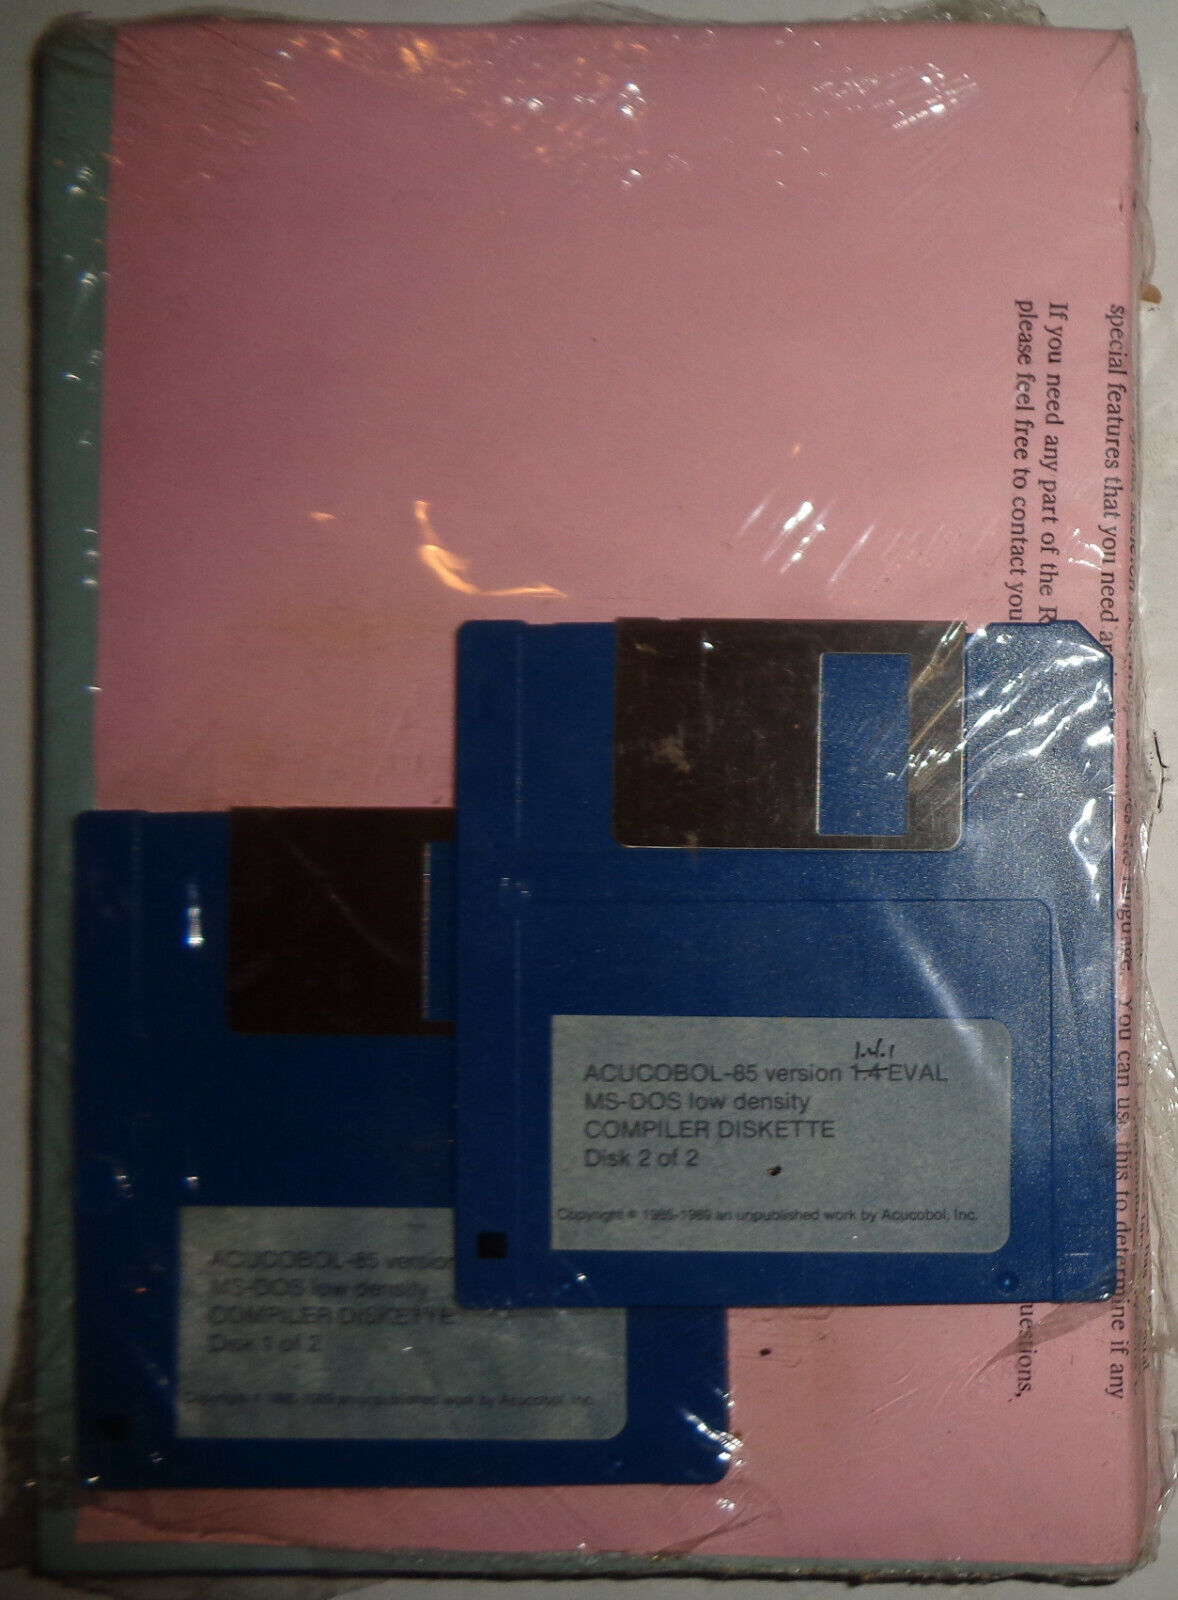 ACUCOBOL - 85 Compiler, Version 1.4.1, 1989. Evaluation copy. Tekort, super speciale prijs, beperkte verkoop